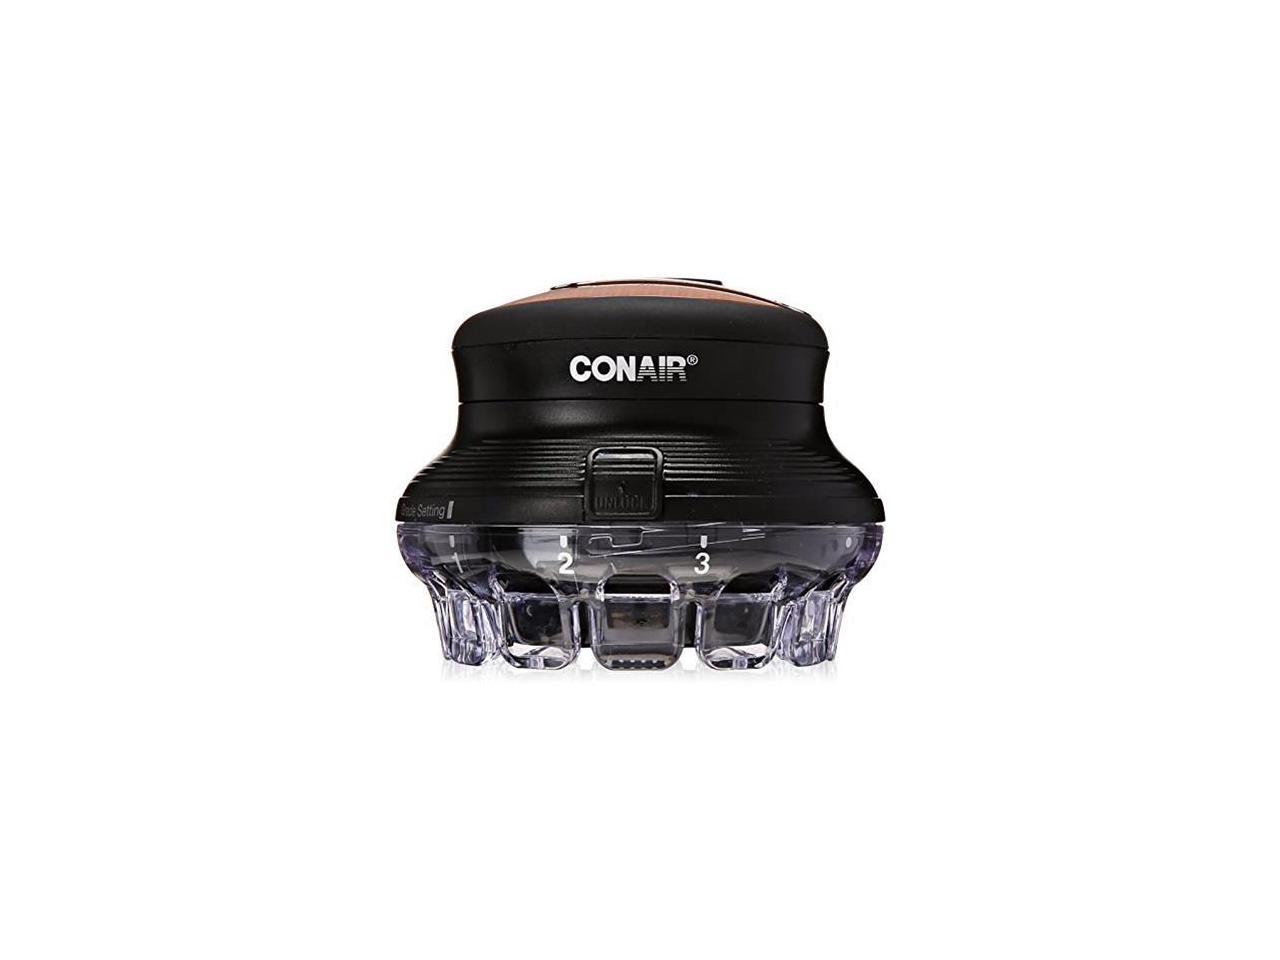 TM Cord/Cordless Circular Haircut Kit CONAIR HC900RN Even Cut 